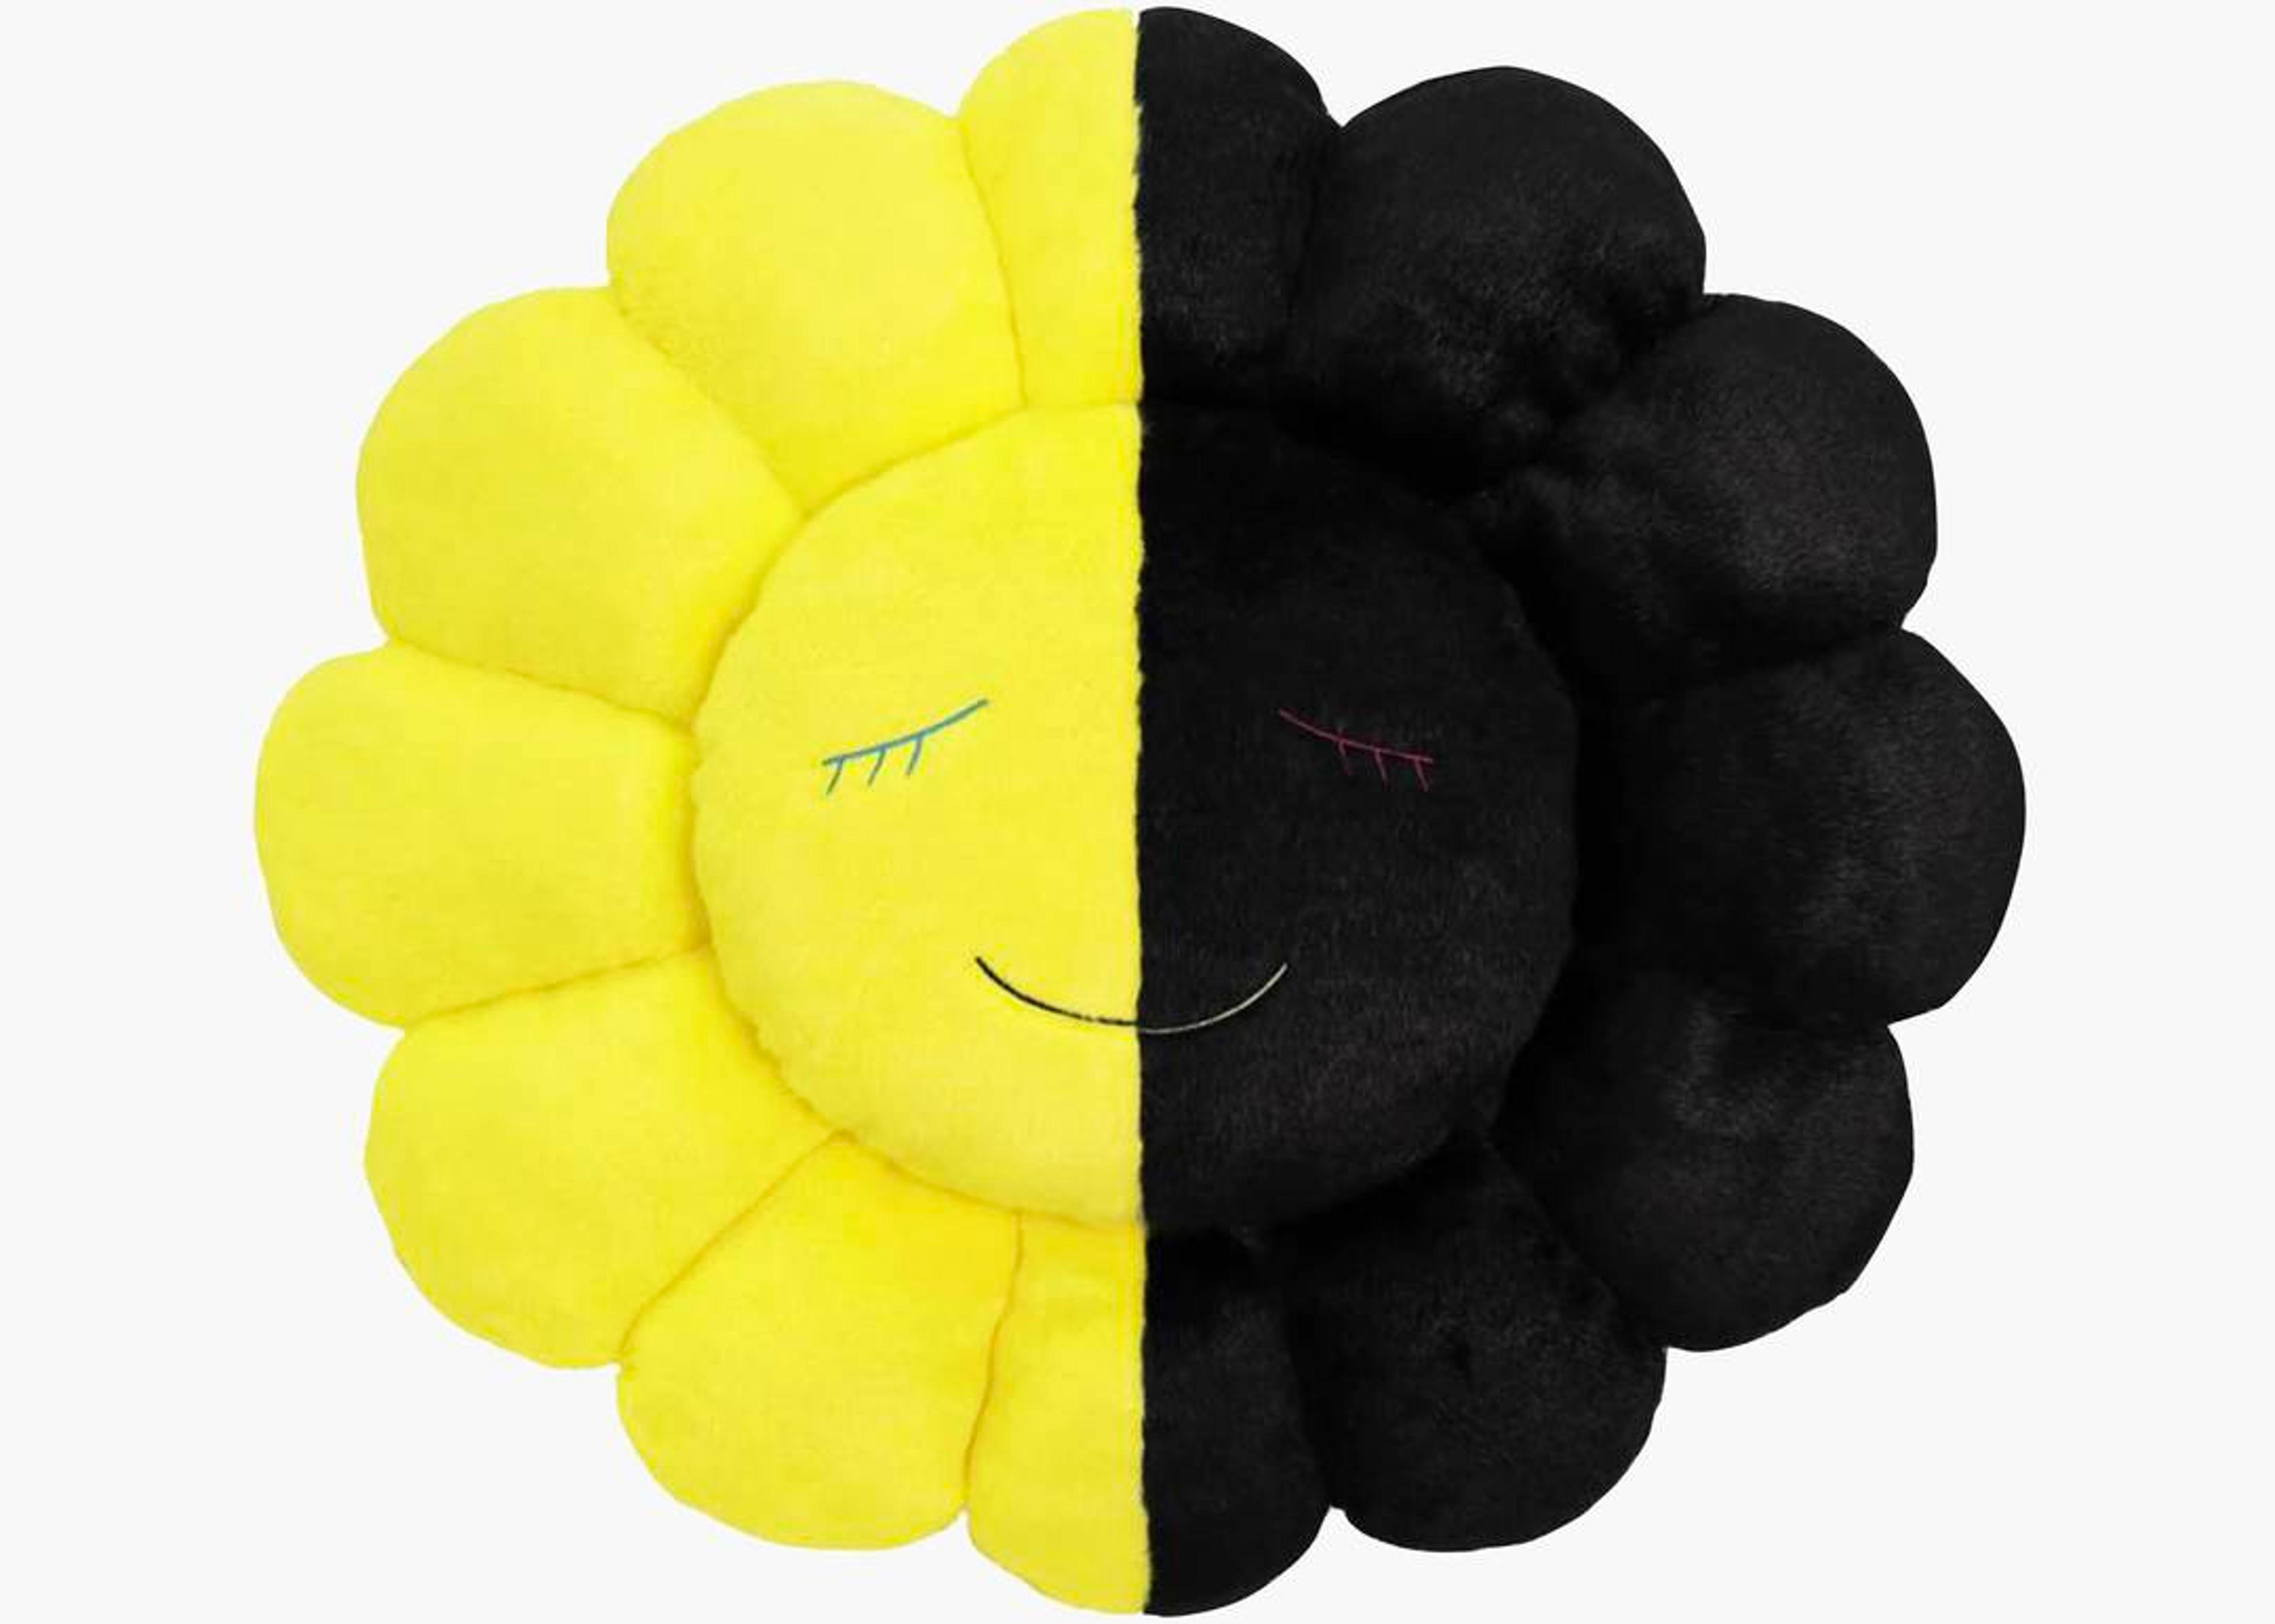 Alternate View 1 of Takashi Murakami x HIKARU Collaboration Flower Plush Black/Yello